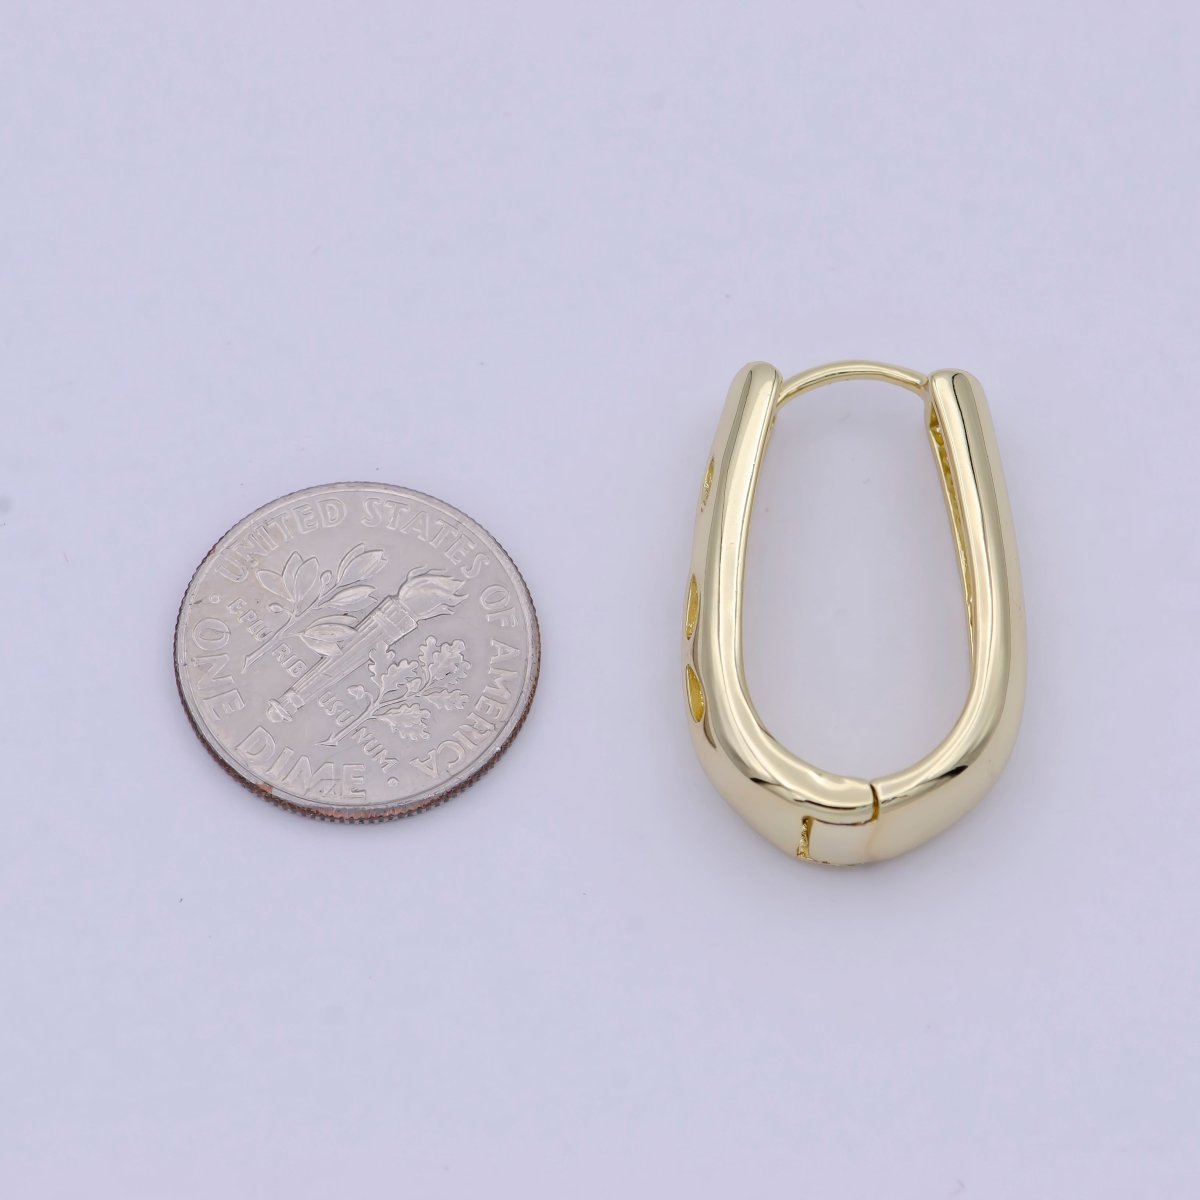 14K Gold Filled Hoop Earrings, Oval Hoop Earrings, Small Oval Gold Hoops Minimalist Jewelry For Women, Simple Gold Oval Earring T-304 - DLUXCA